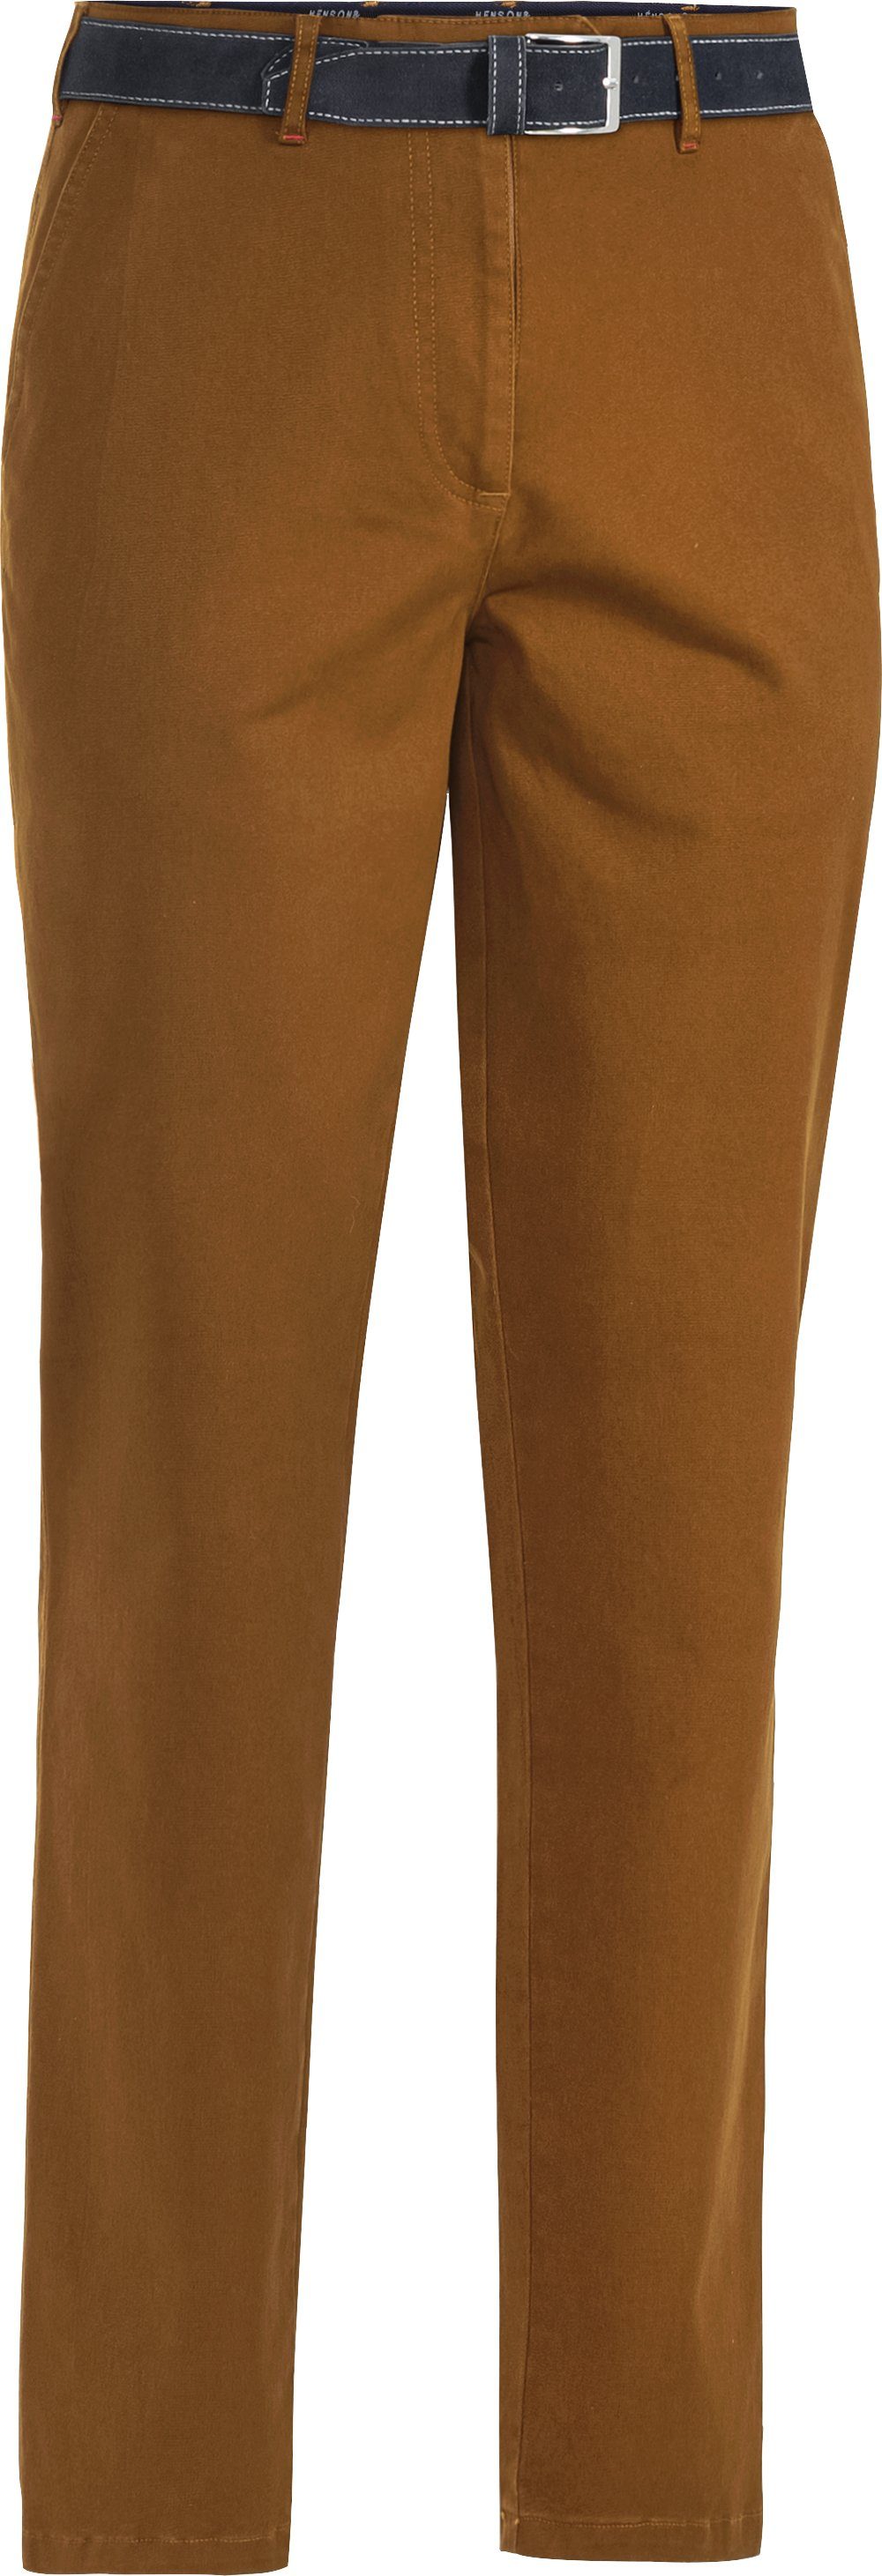 HENSON&HENSON Stretch-Hose in farbintensiver, formstabiler Twill-Qualität mit passendem Gürtel gelb | Stretchhosen